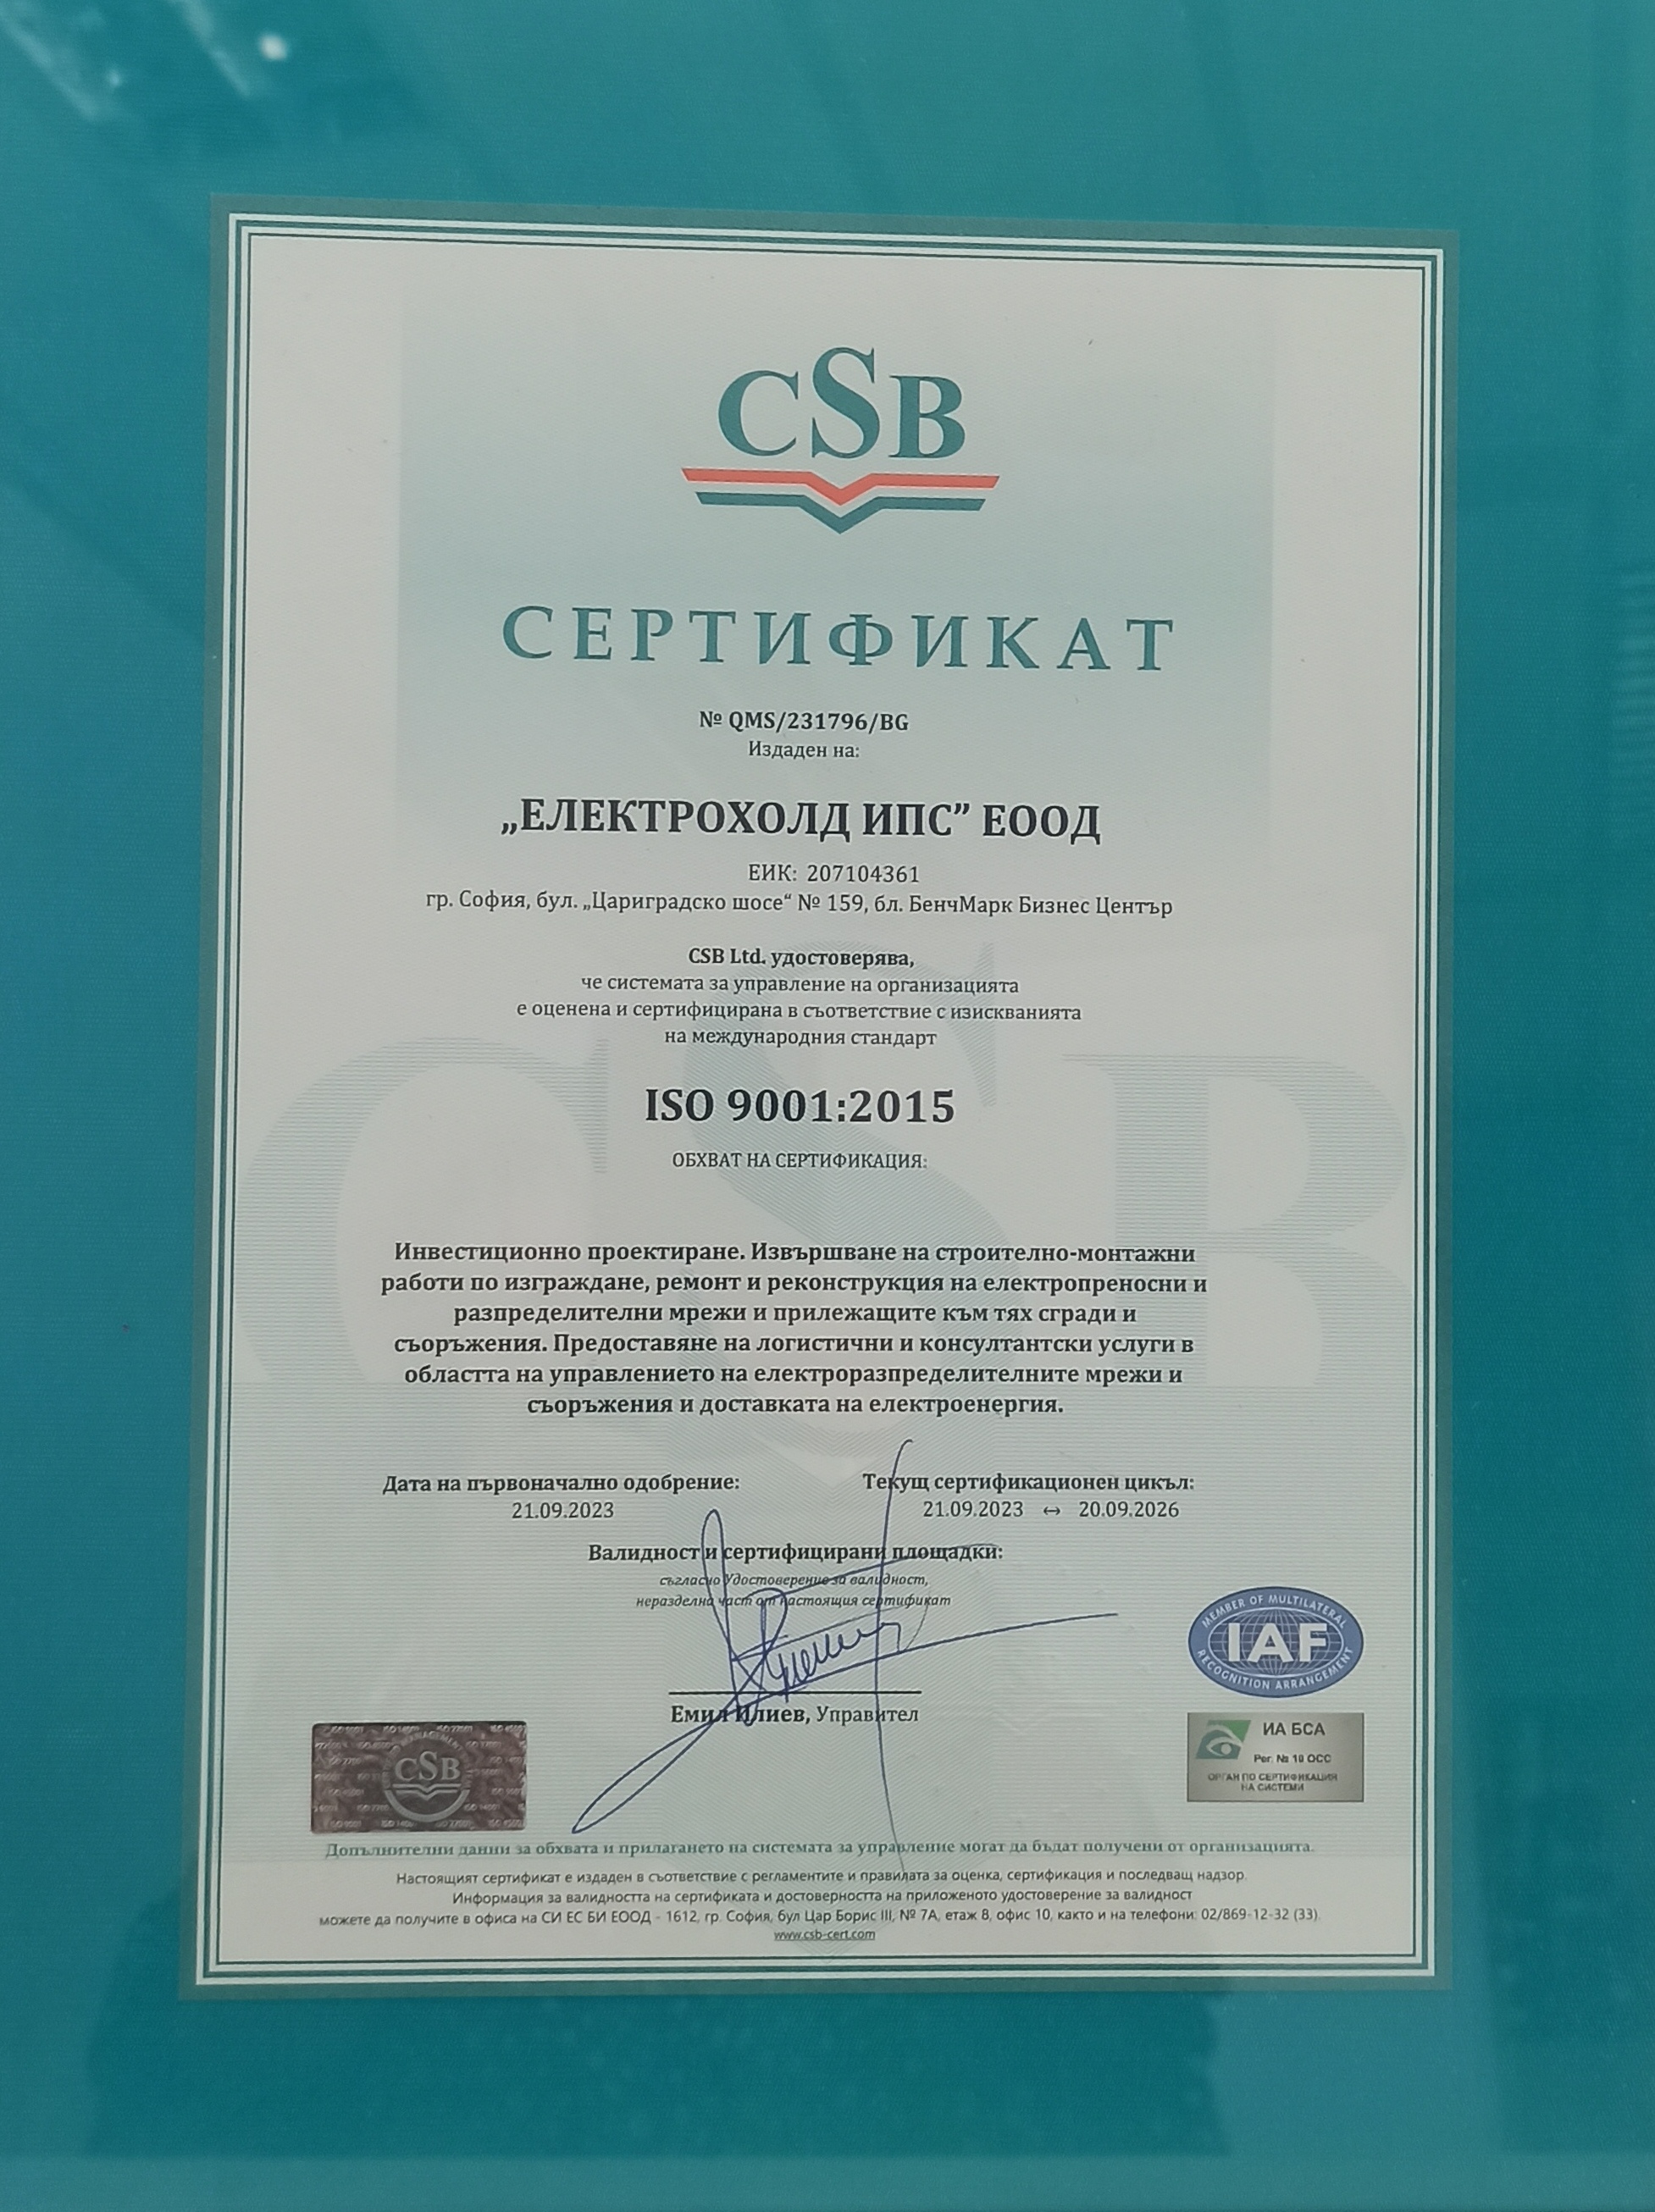 Електрохолд ИПС, едно от дружествата от групата Електрохолд, получи сертификат